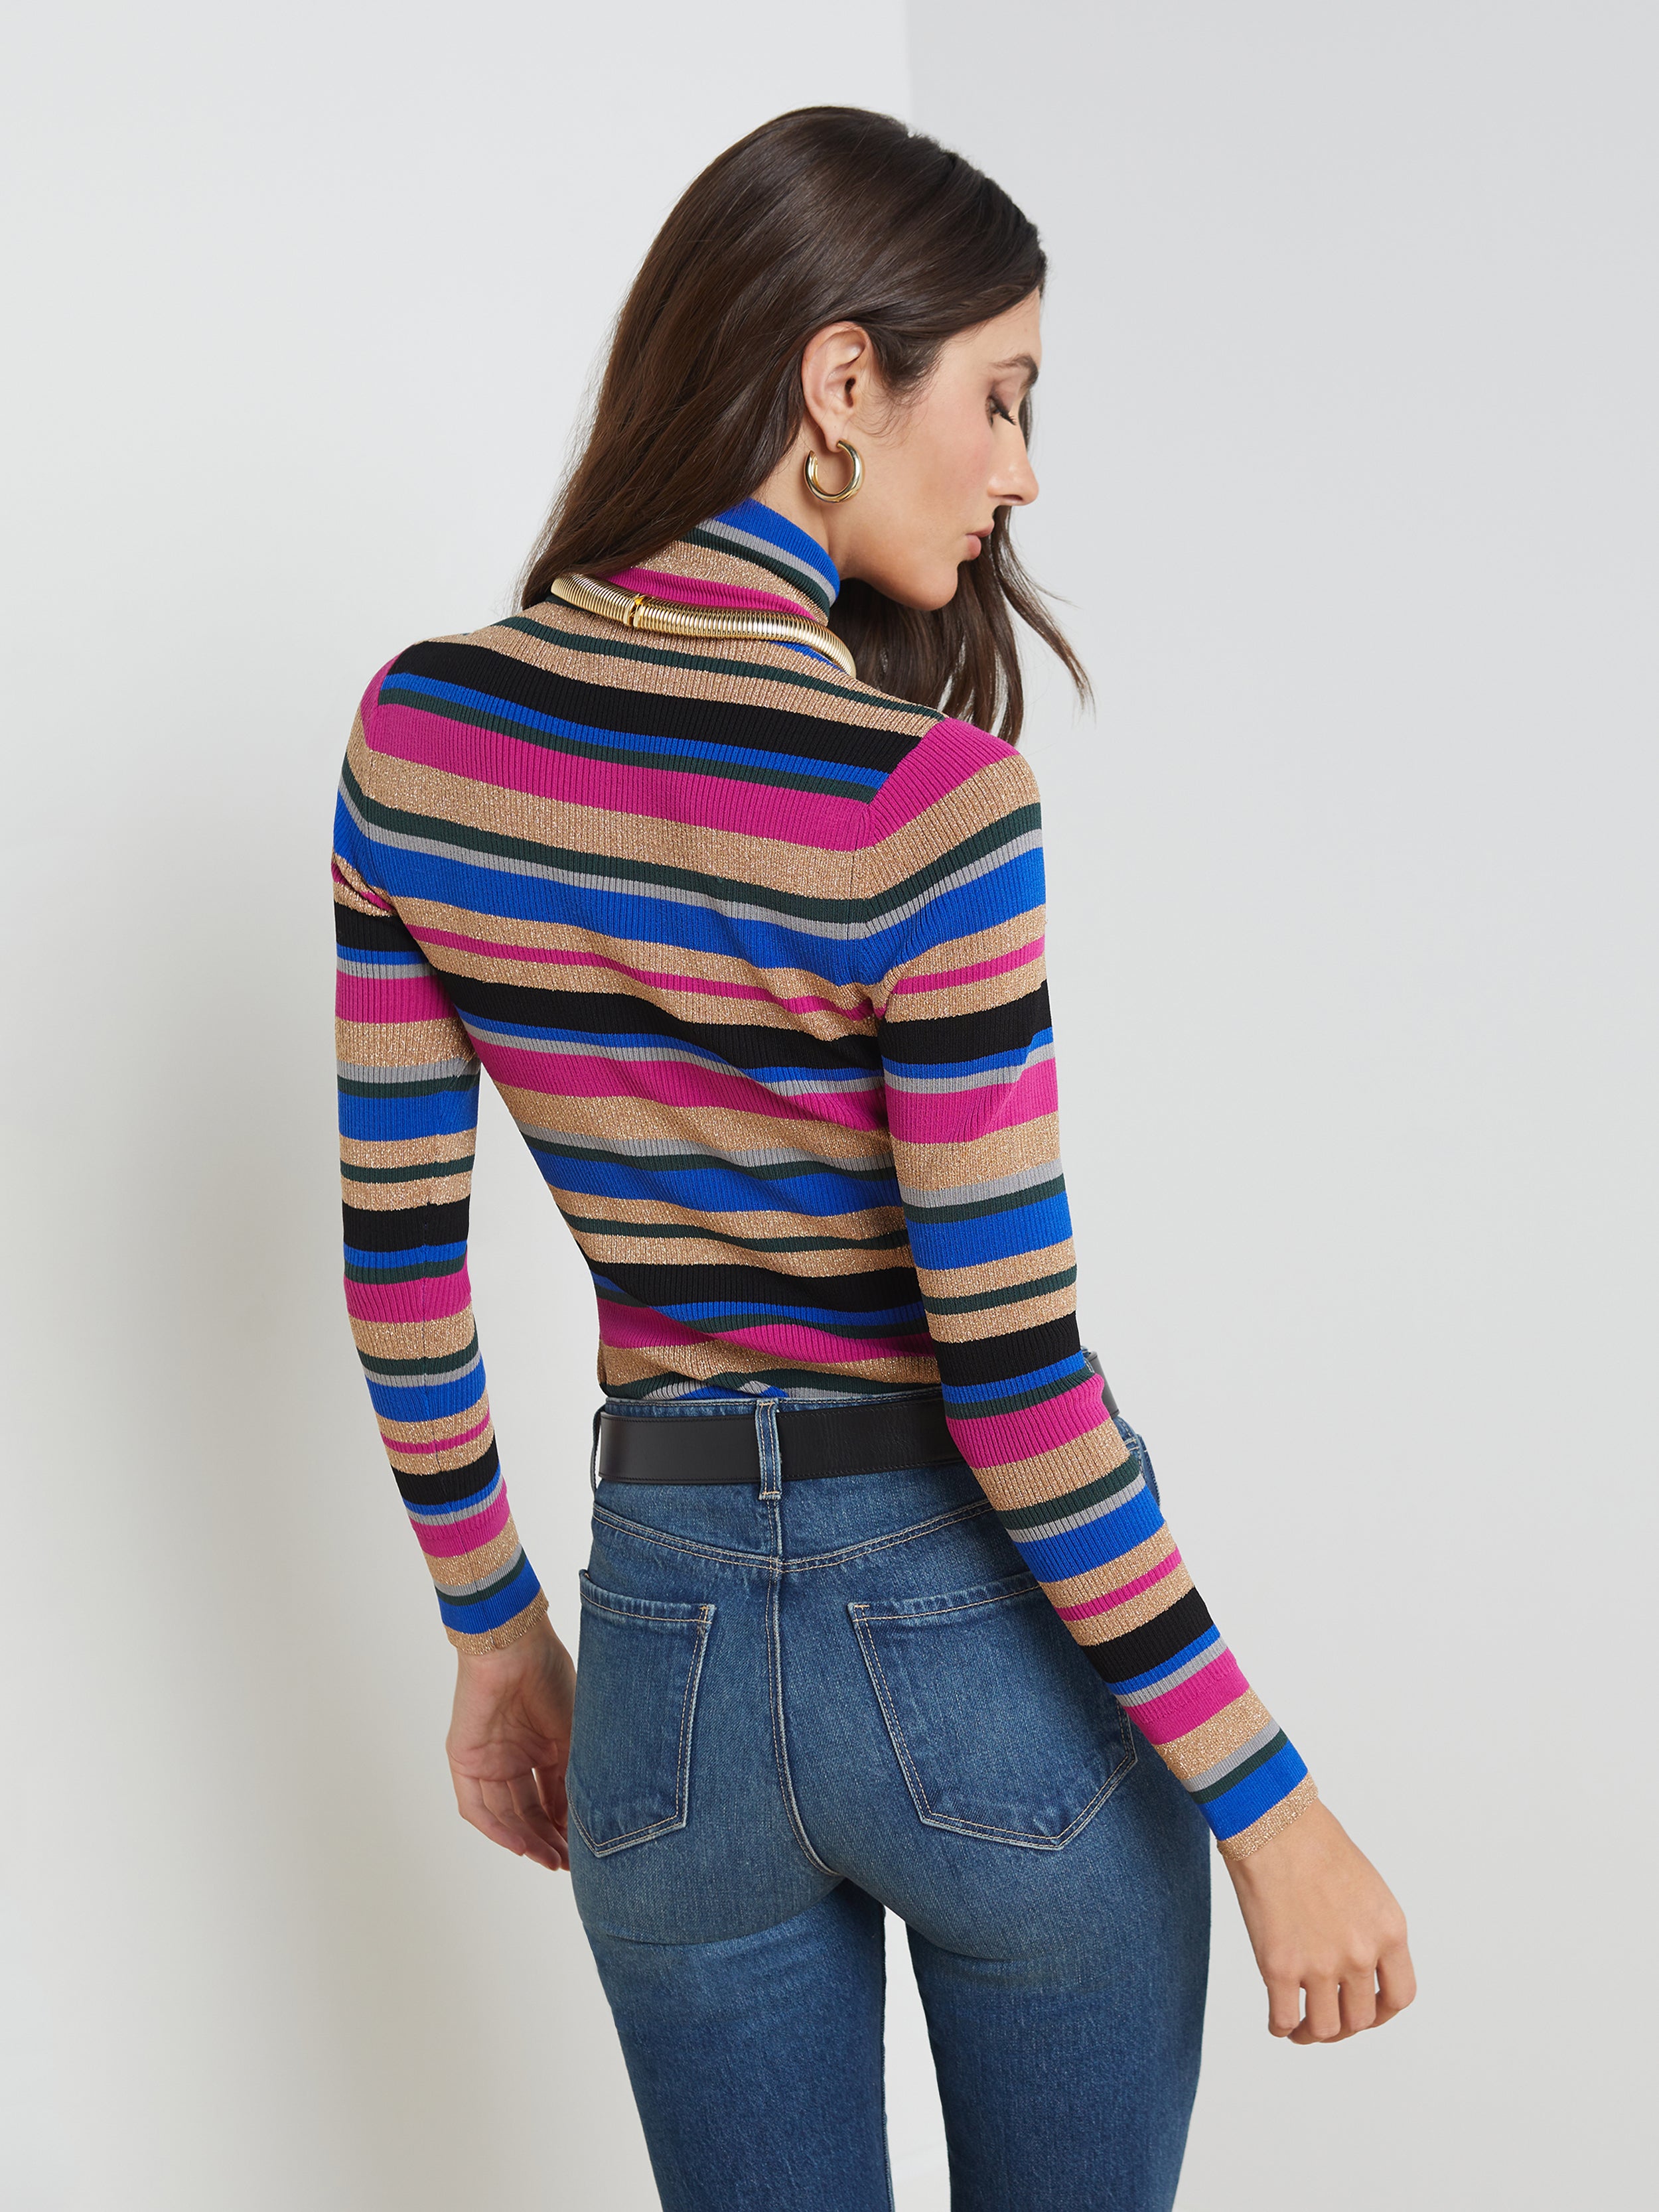 L'AGENCE Olene Sweater in Magenta Multi Stripe